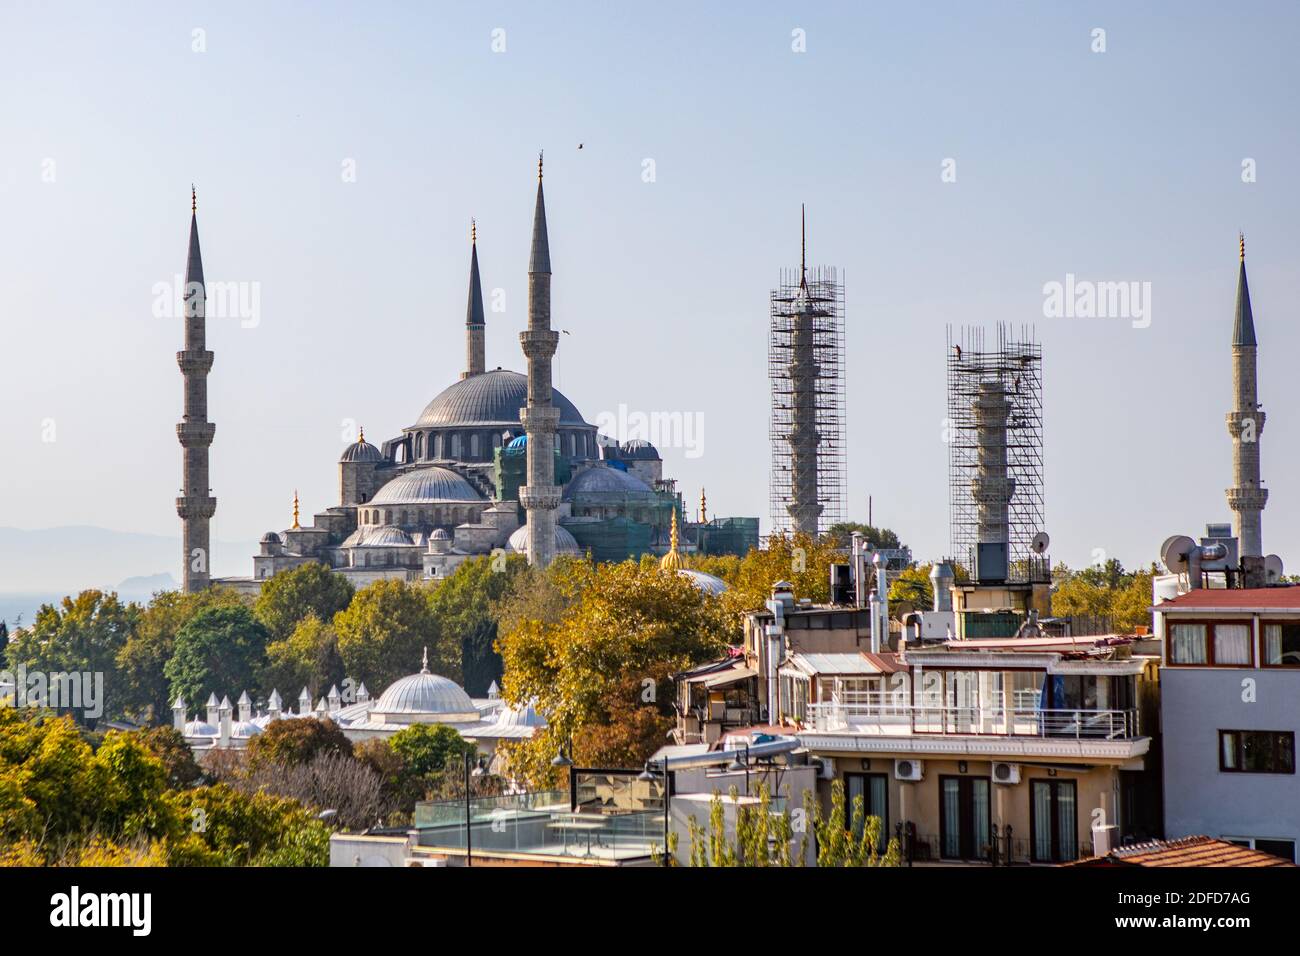 Die Blaue Moschee oder Sultanahmet Camii ist die größte Moschee In Istanbul und ist eine große Touristenattraktion Stockfoto